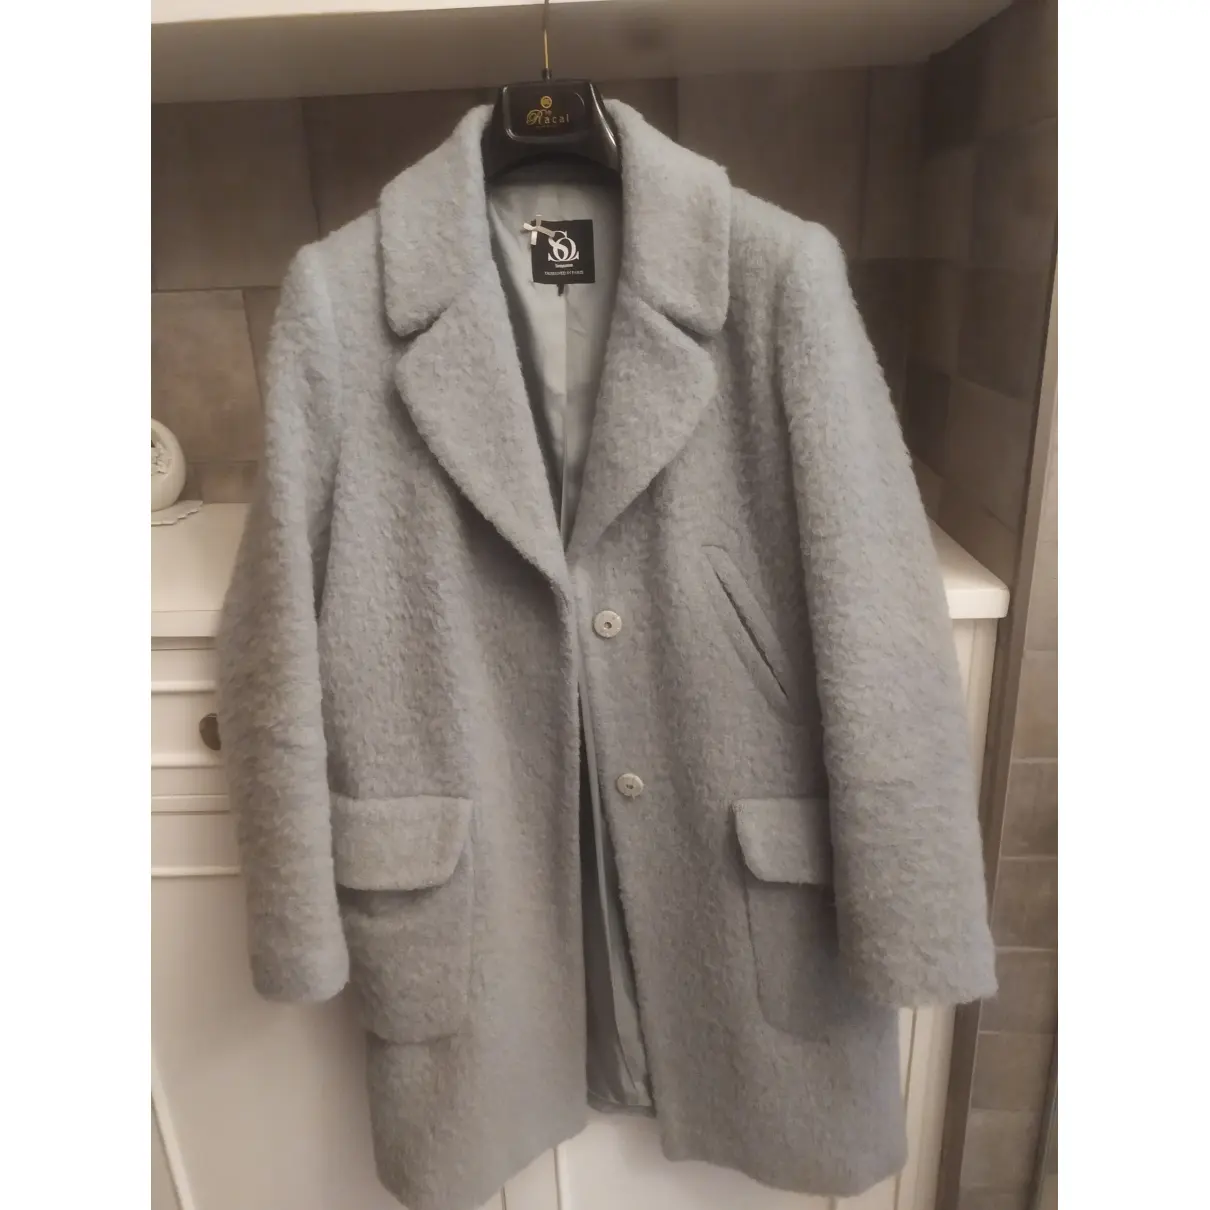 Buy SINEQUANONE Wool coat online